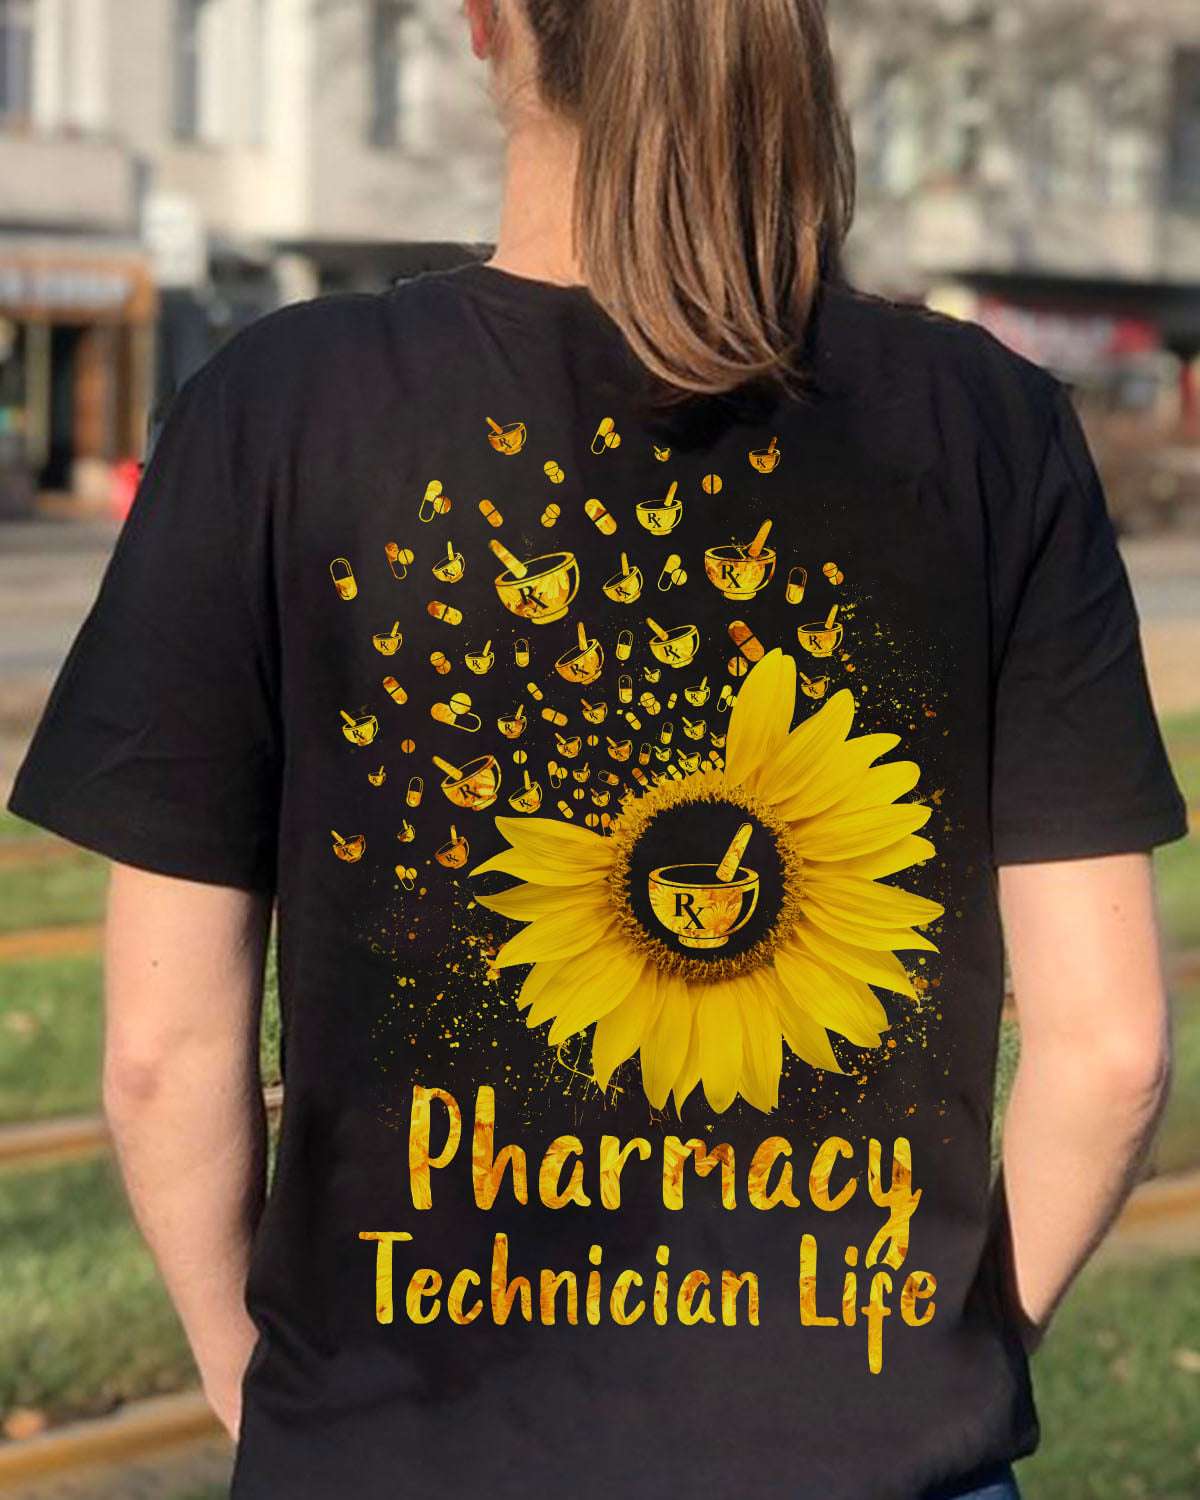 Pharmacy technician life - pharmaceutical technicians the job, certified pharmacy techinician